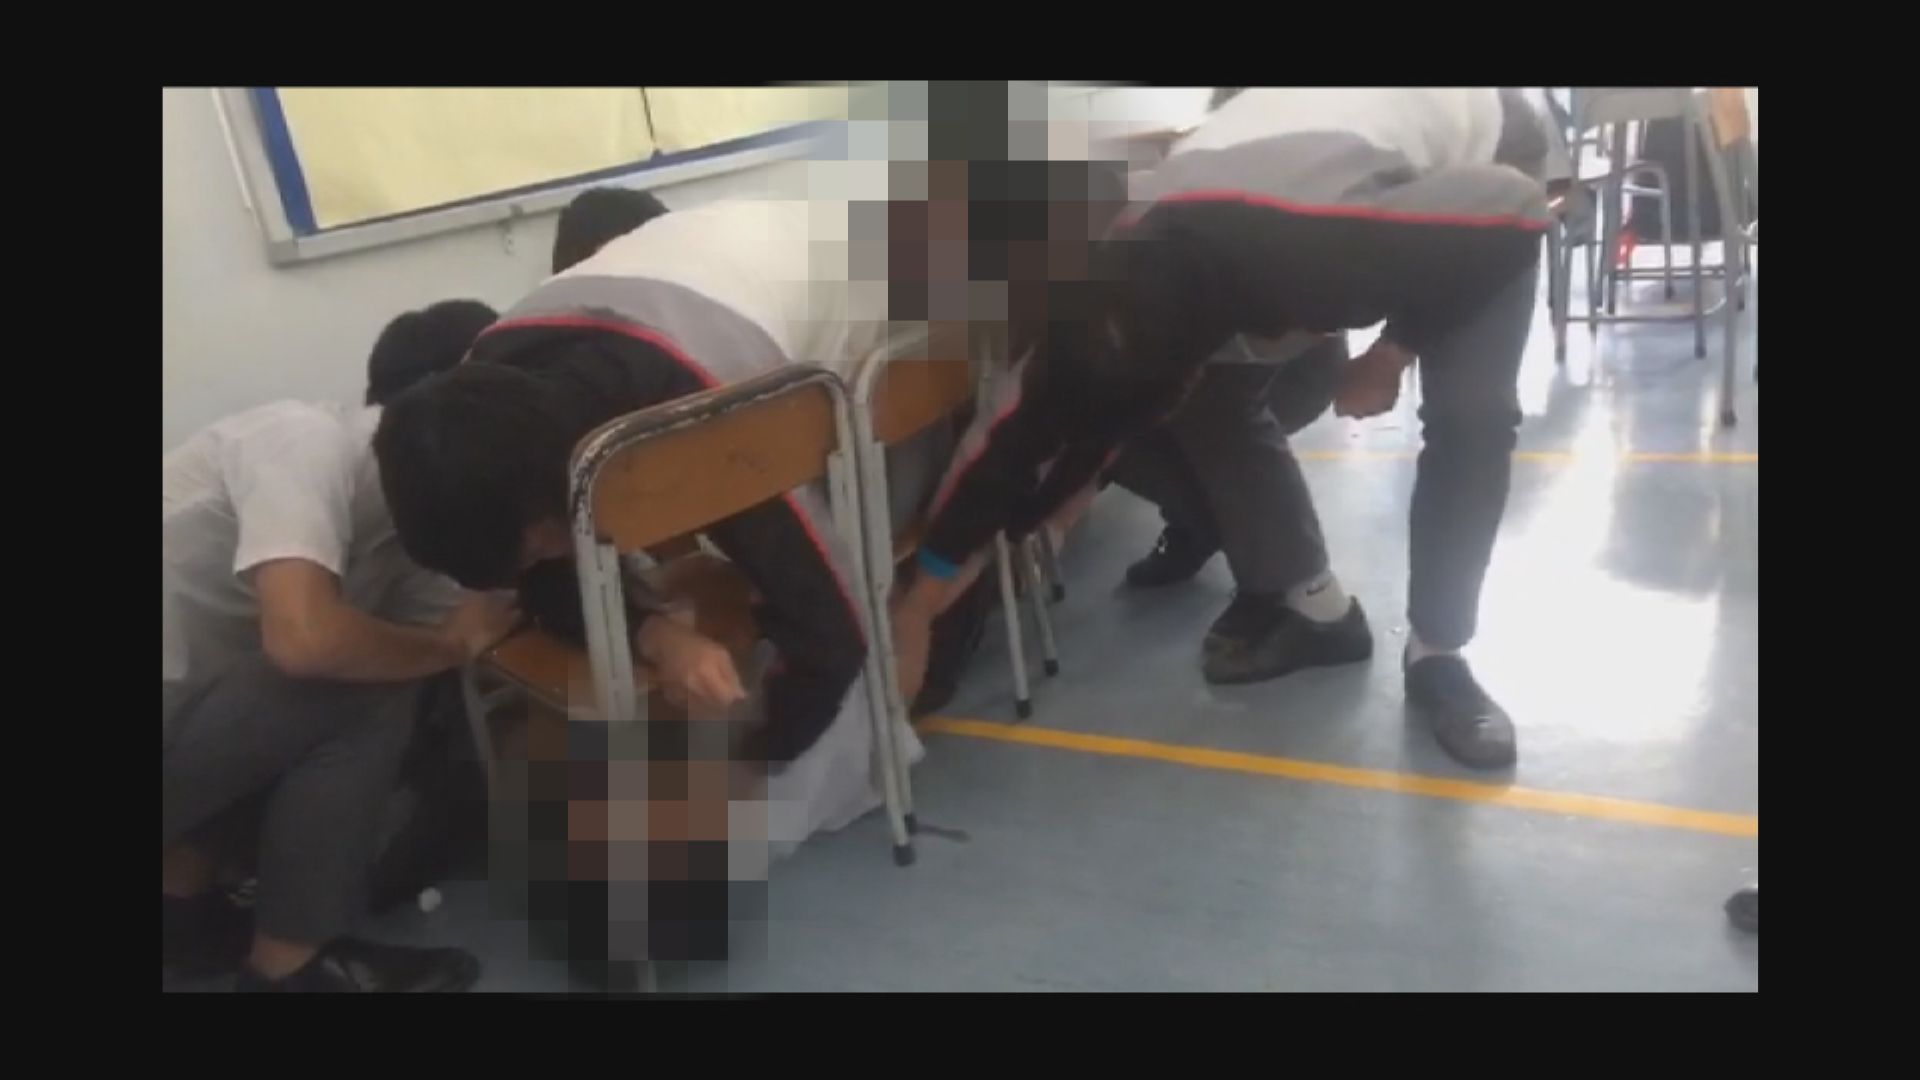 仁濟醫院董之英紀念中學8學生涉欺凌被捕